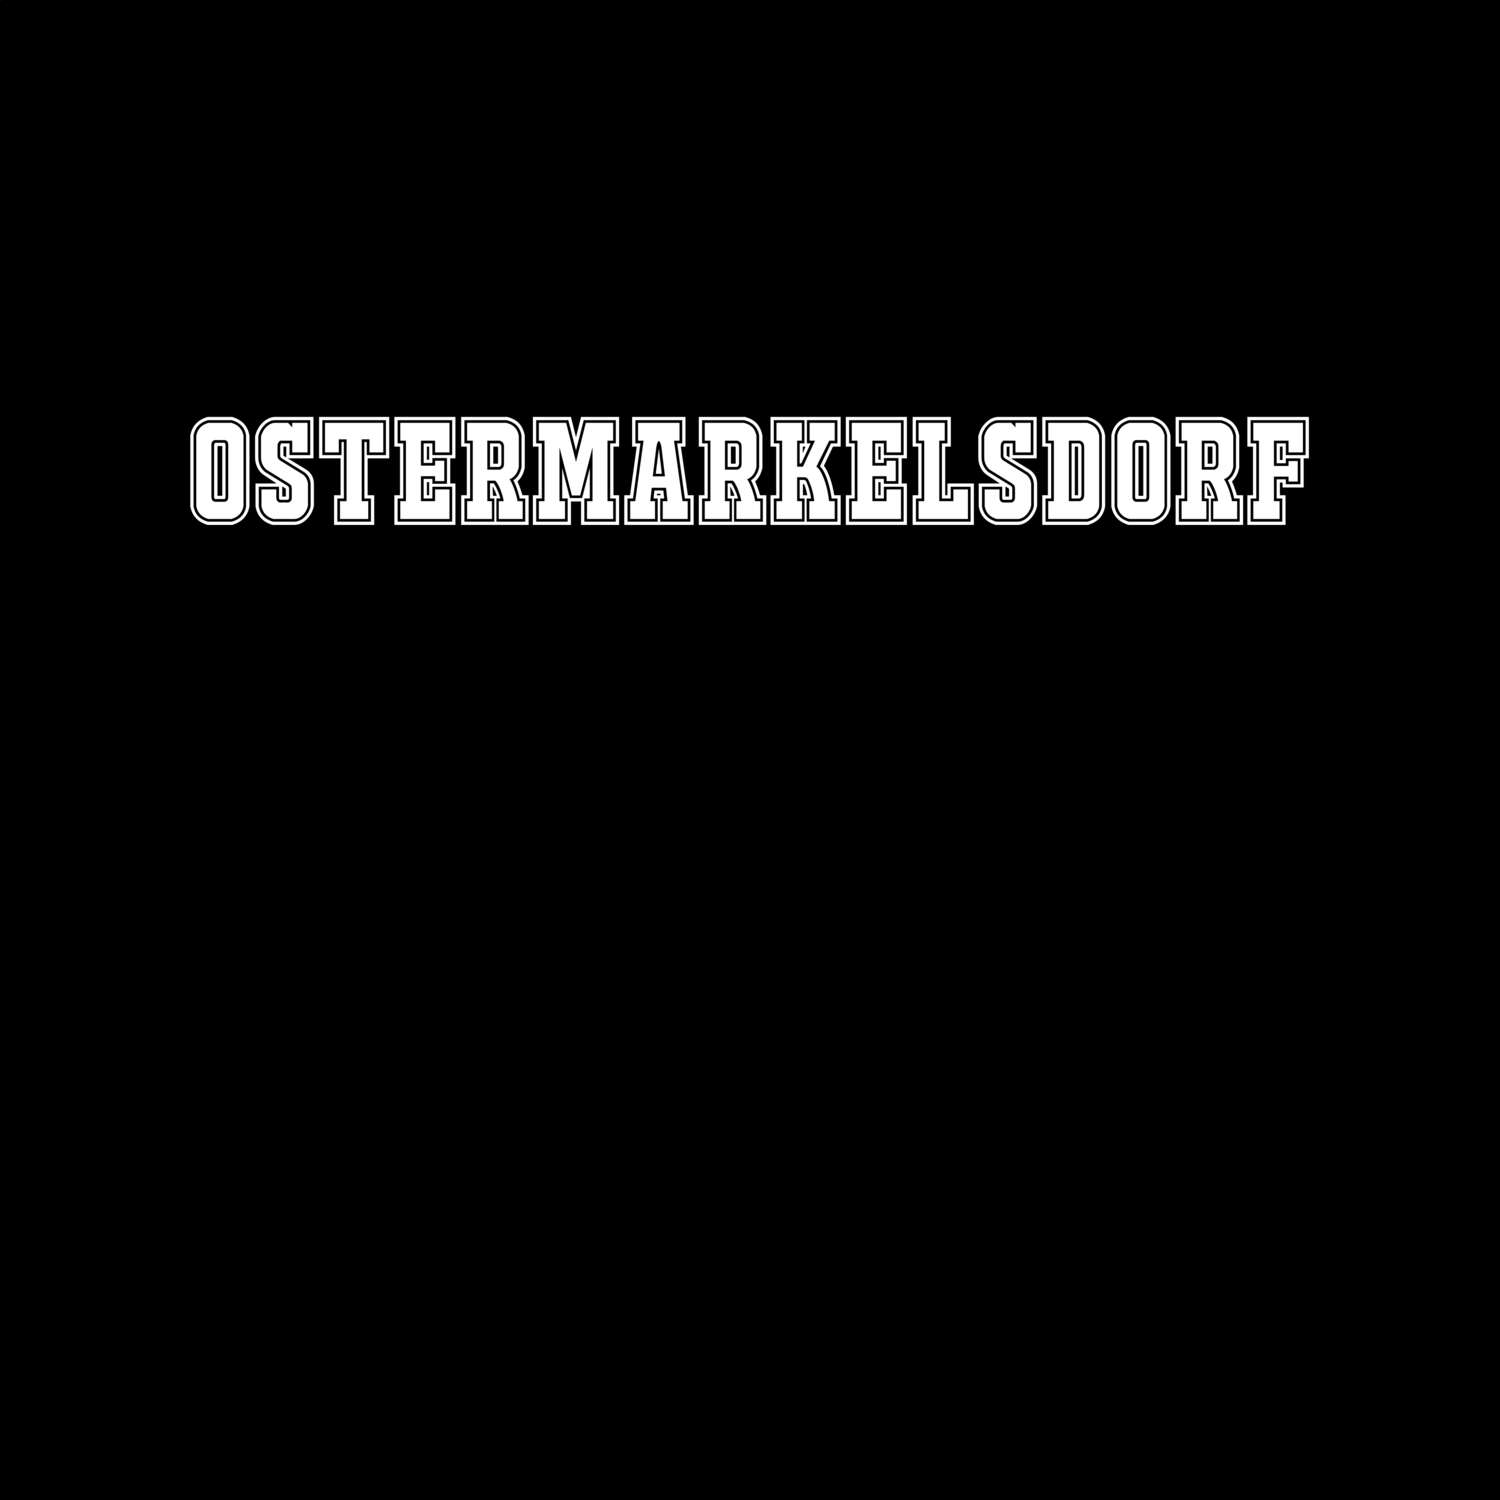 Ostermarkelsdorf T-Shirt »Classic«